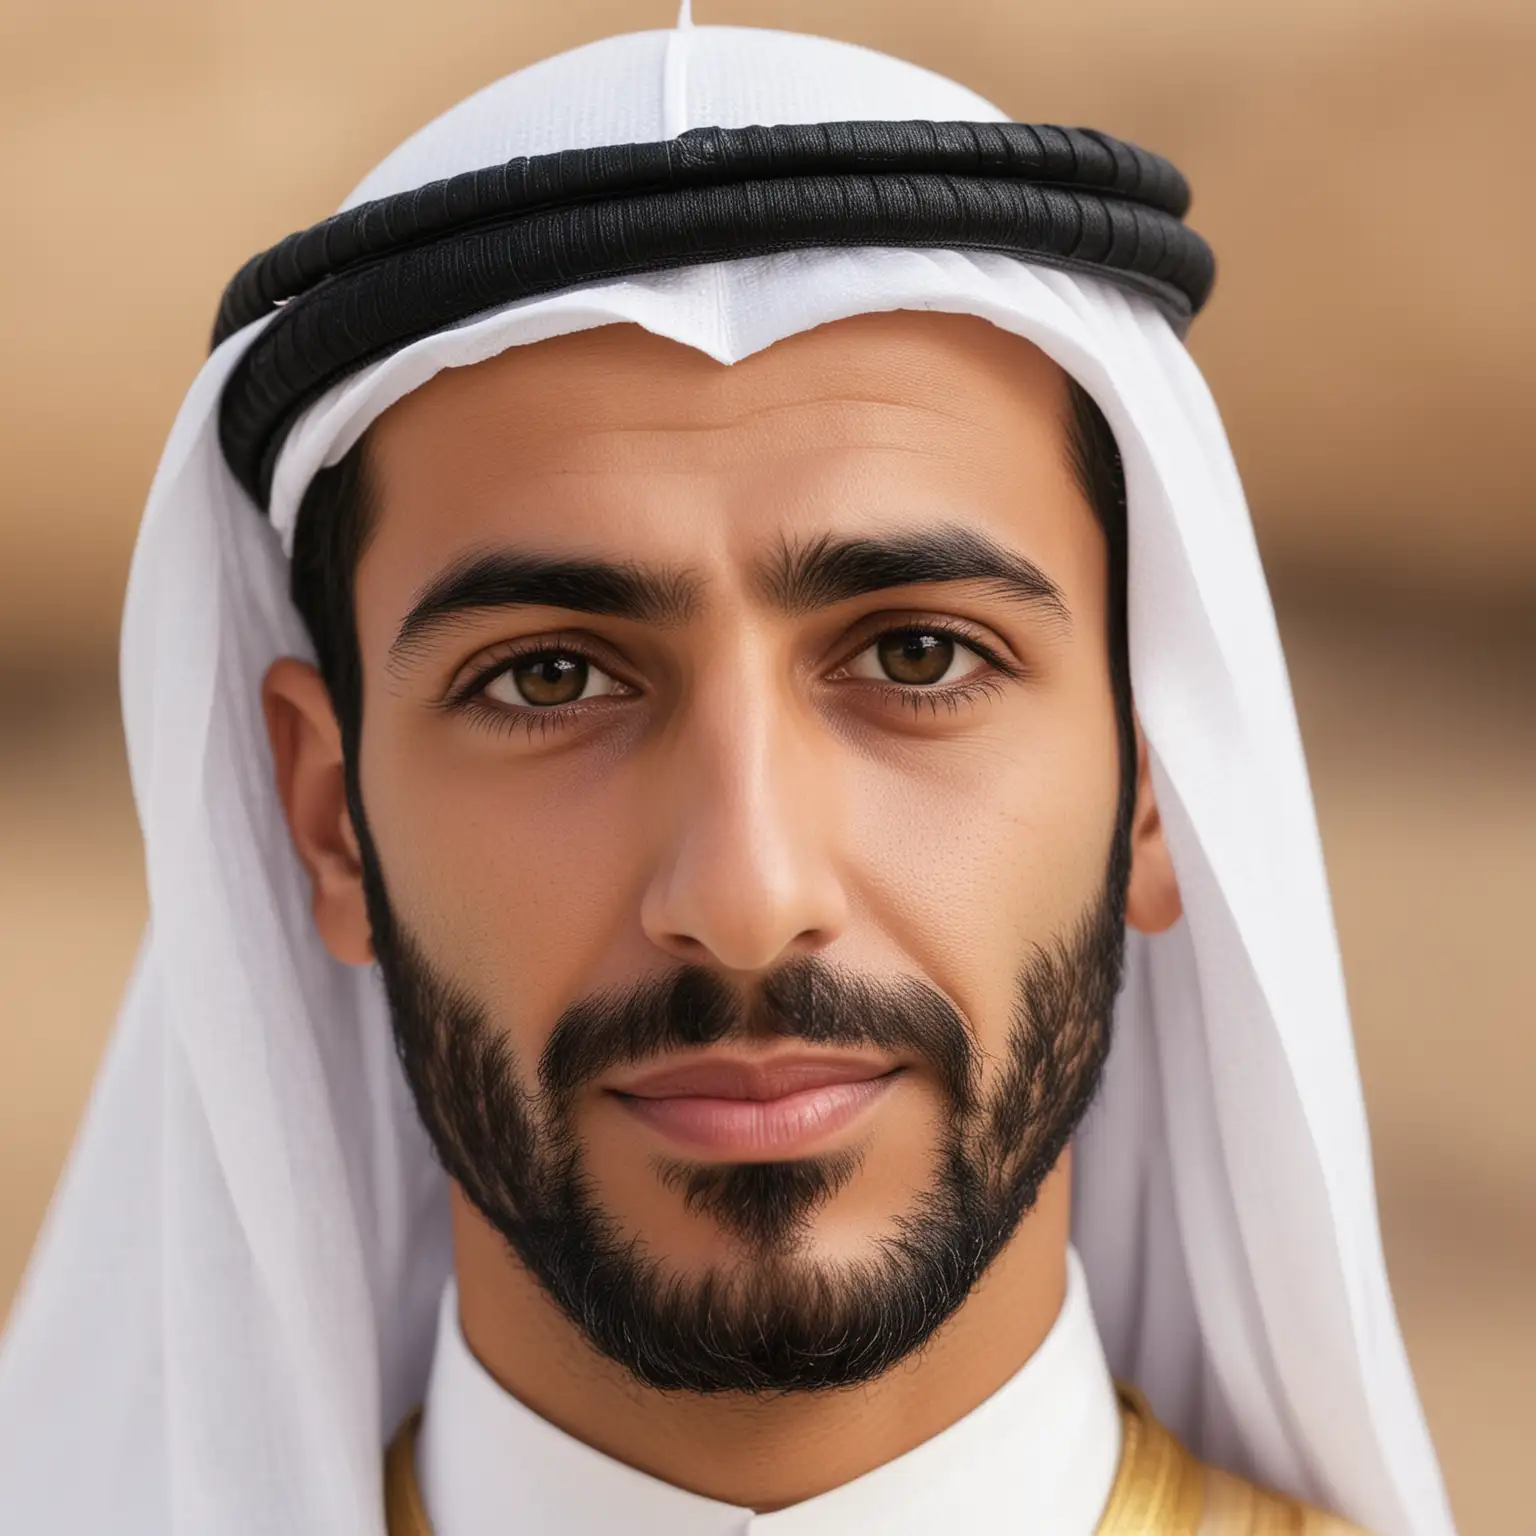 Arab man age 30